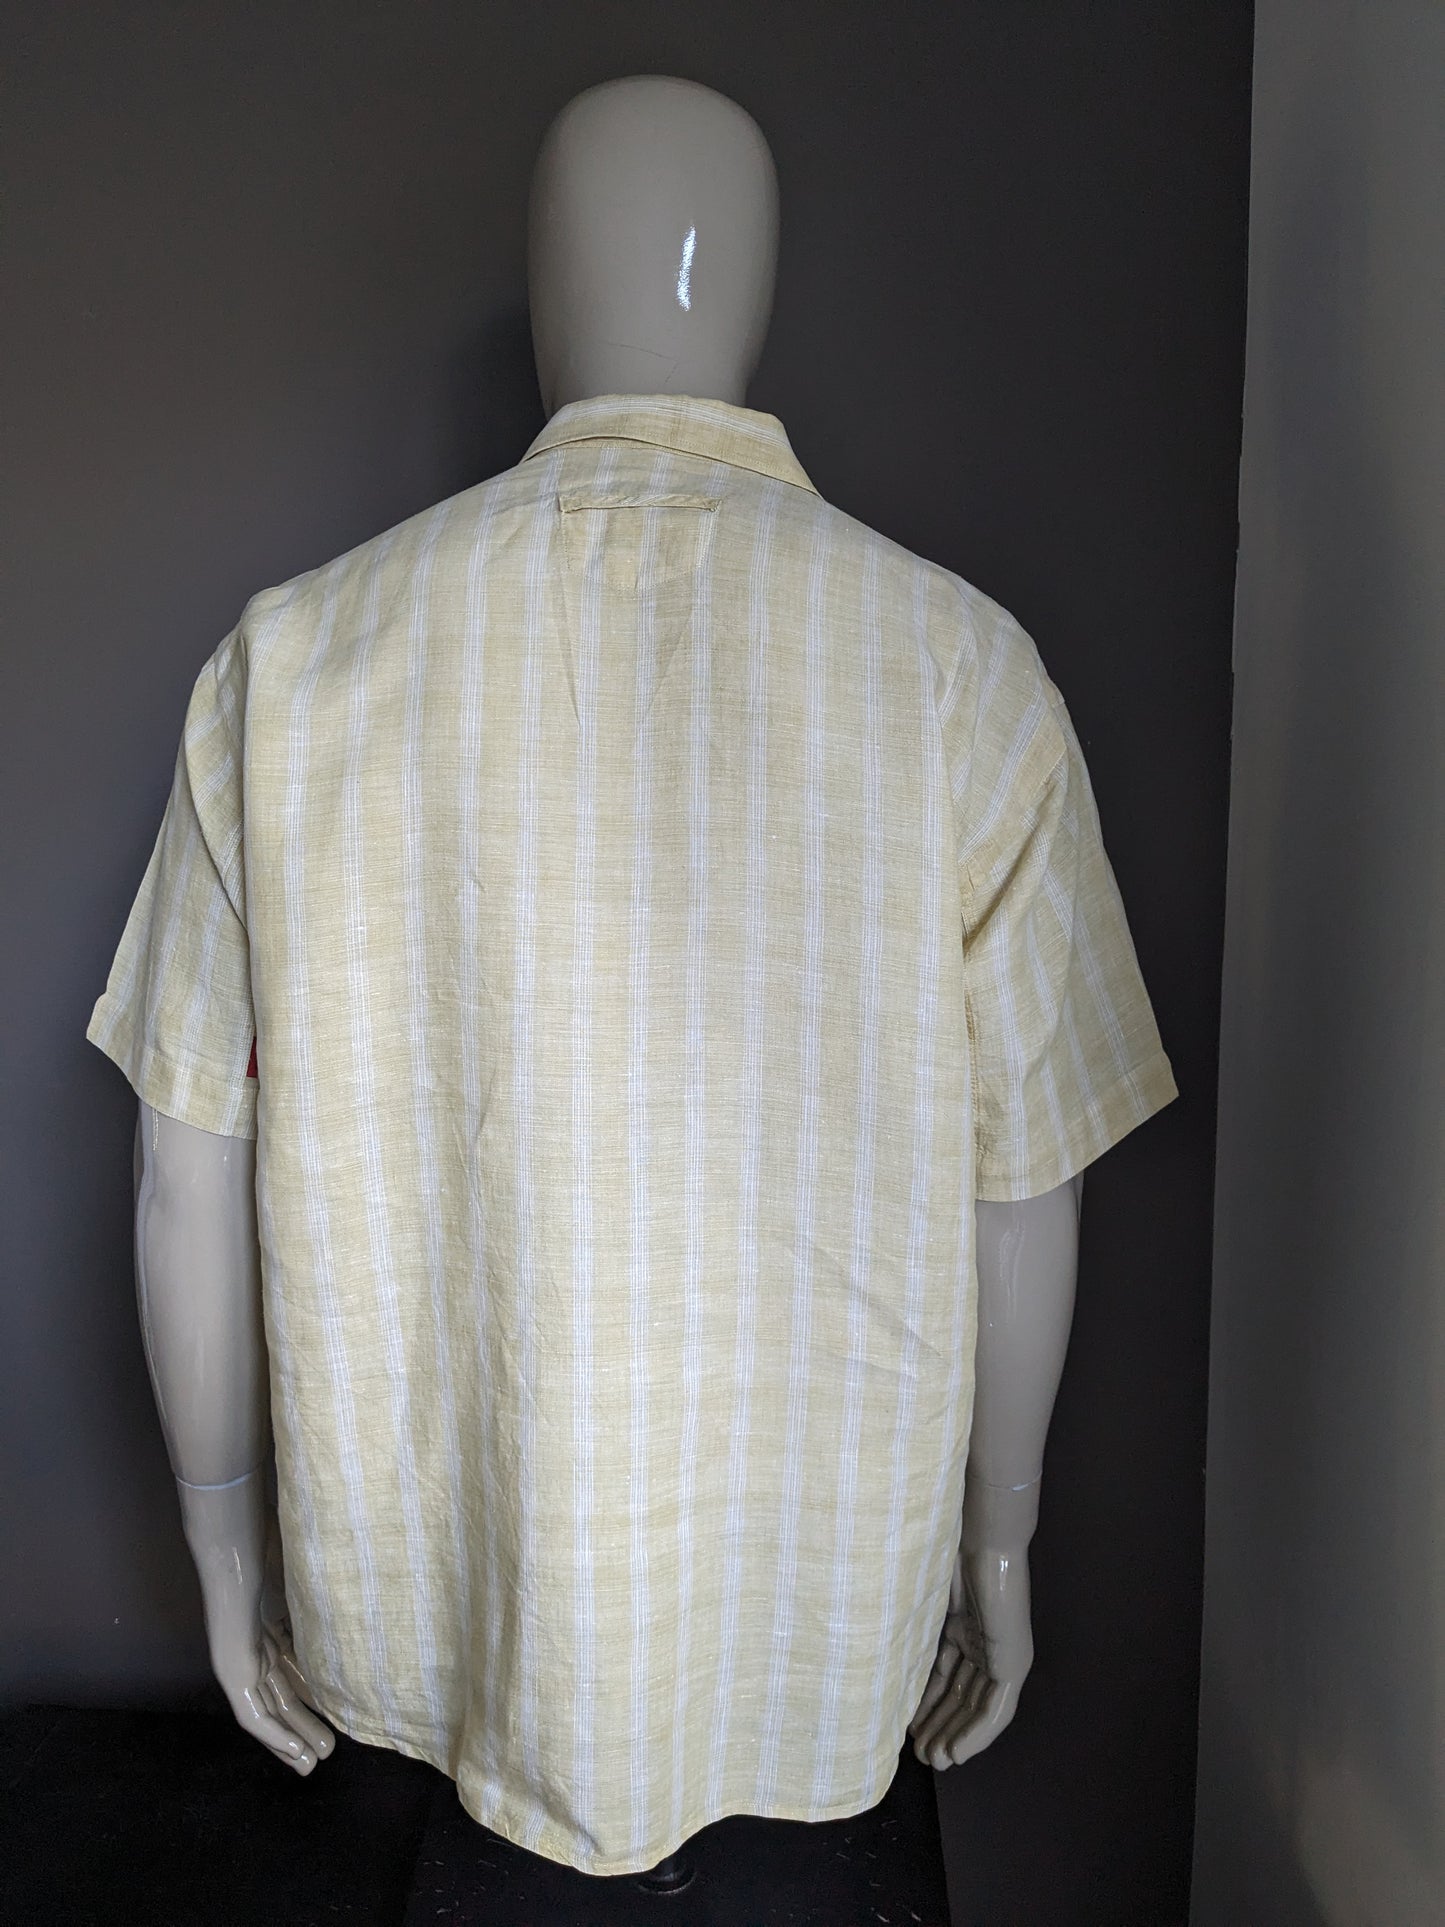 Vintage -Leinen Signum Shirt Kurzärmel. Größere Knöpfe. Weiß gelber karierte. Größe L / XL.